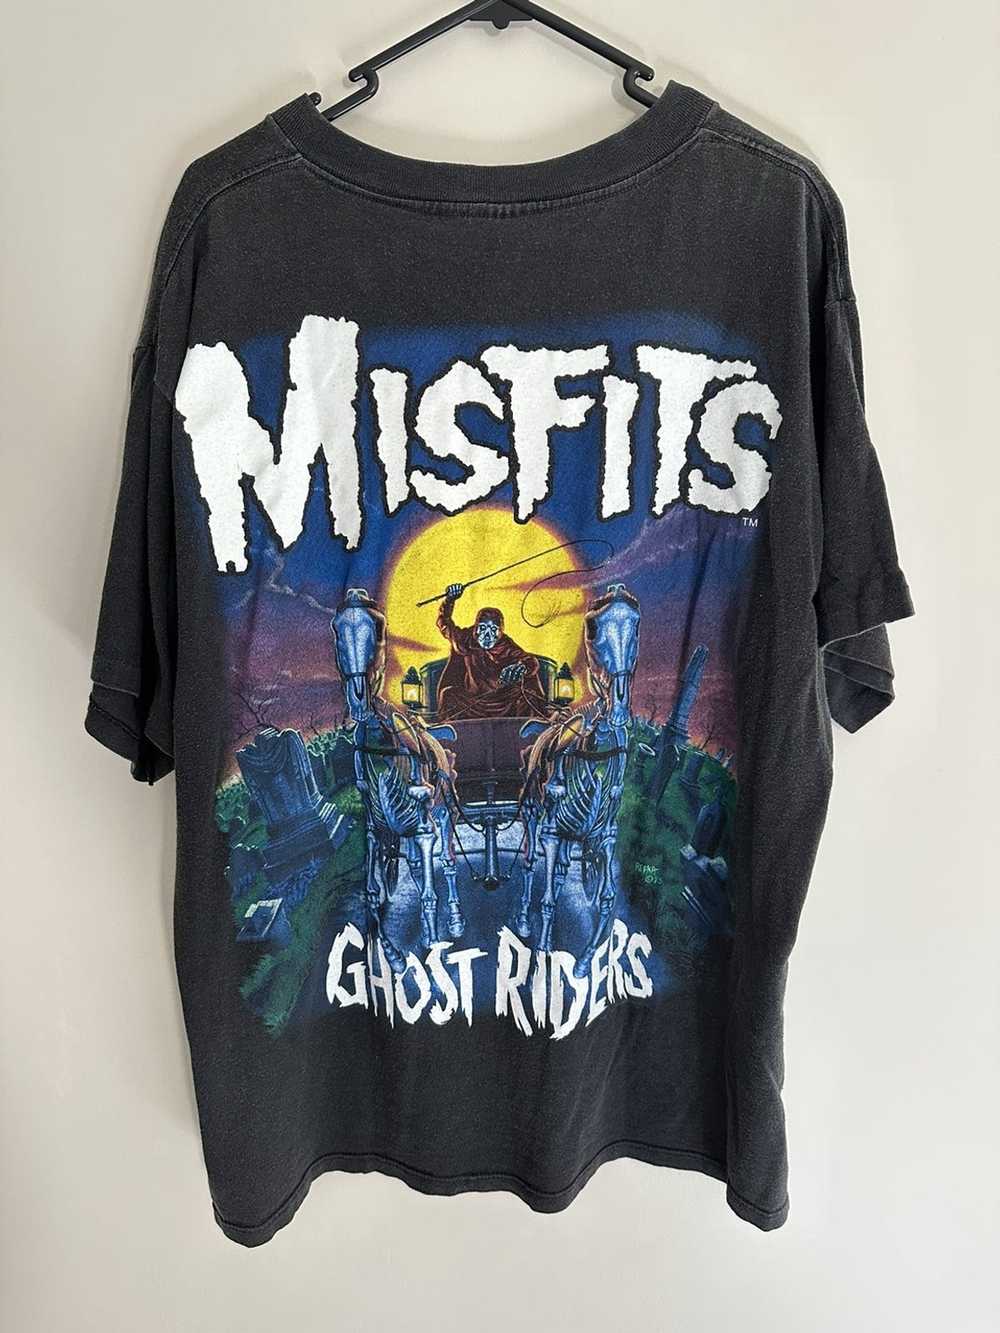 Misfits Misfits ghost riders 1995 - image 2